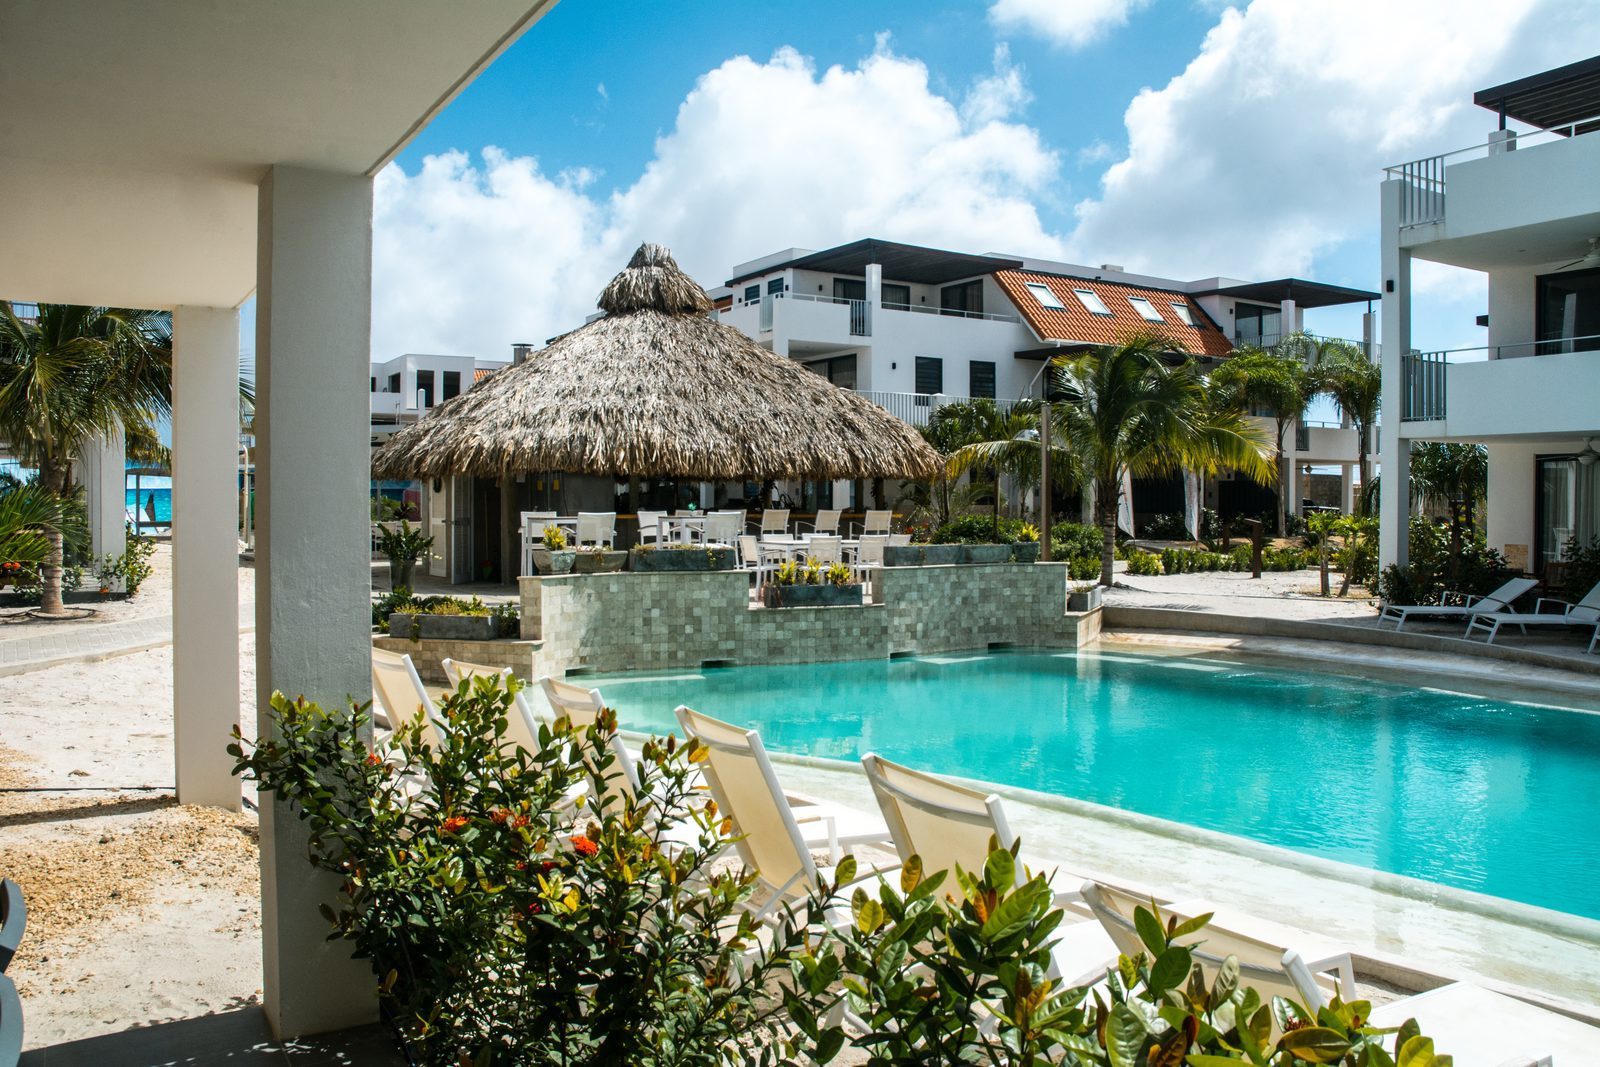 Vous cherchez un hôtel à Bonaire ? Le Resort Bonaire dispose d'une belle piscine et d'appartements luxueux.